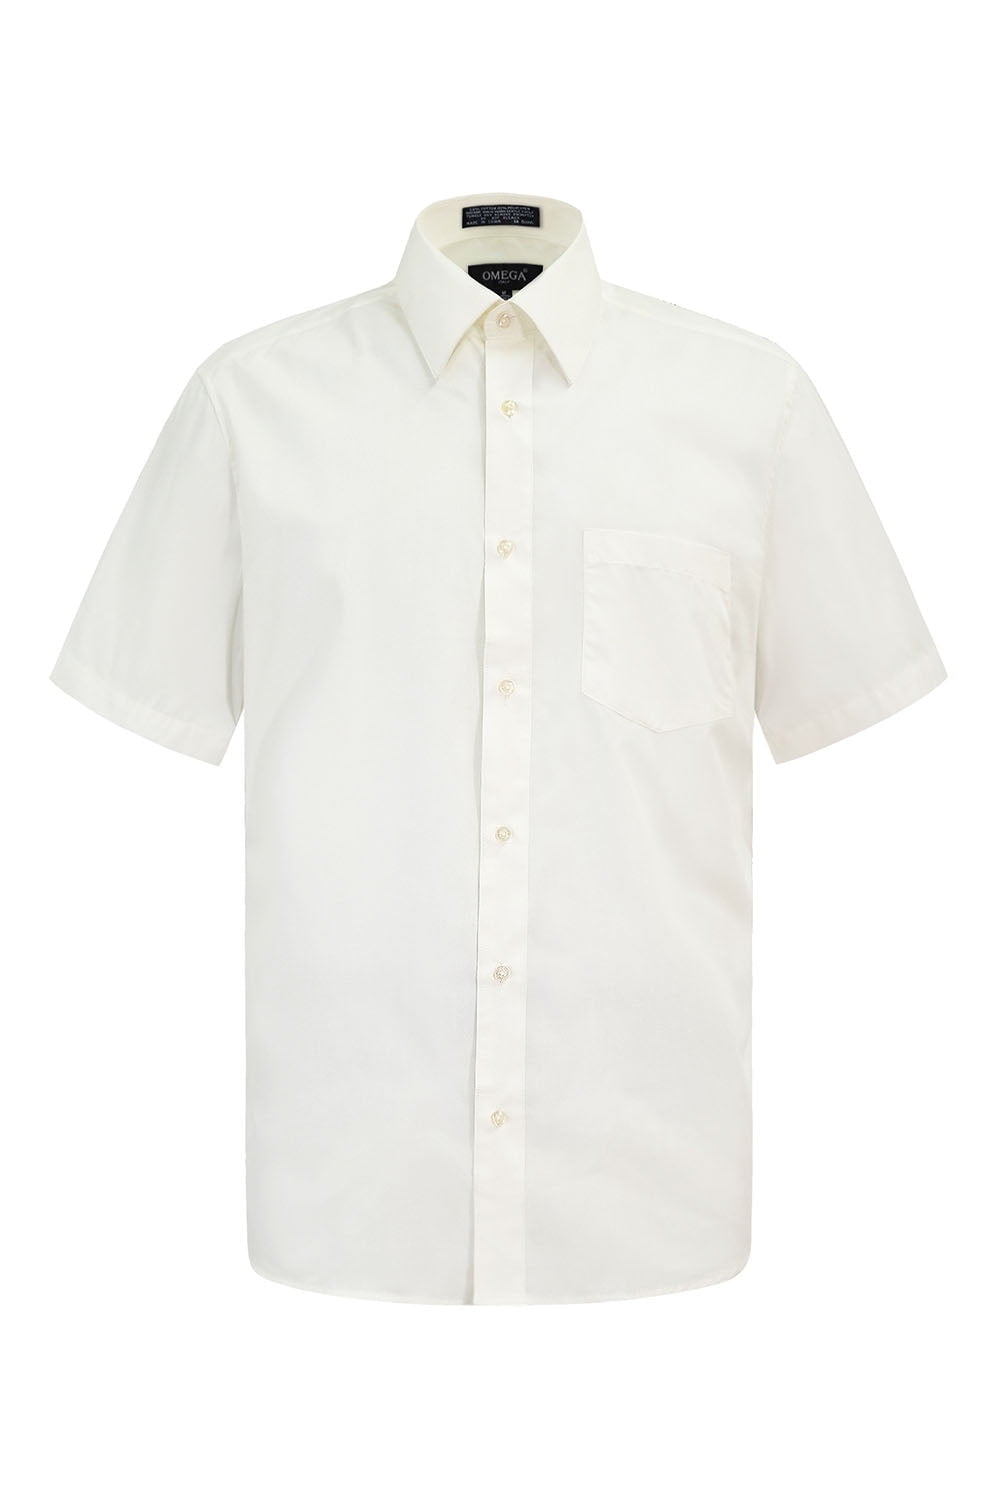 G-Style USA Men's Regular Fit Short Sleeve Button Down Dress Shirts ...